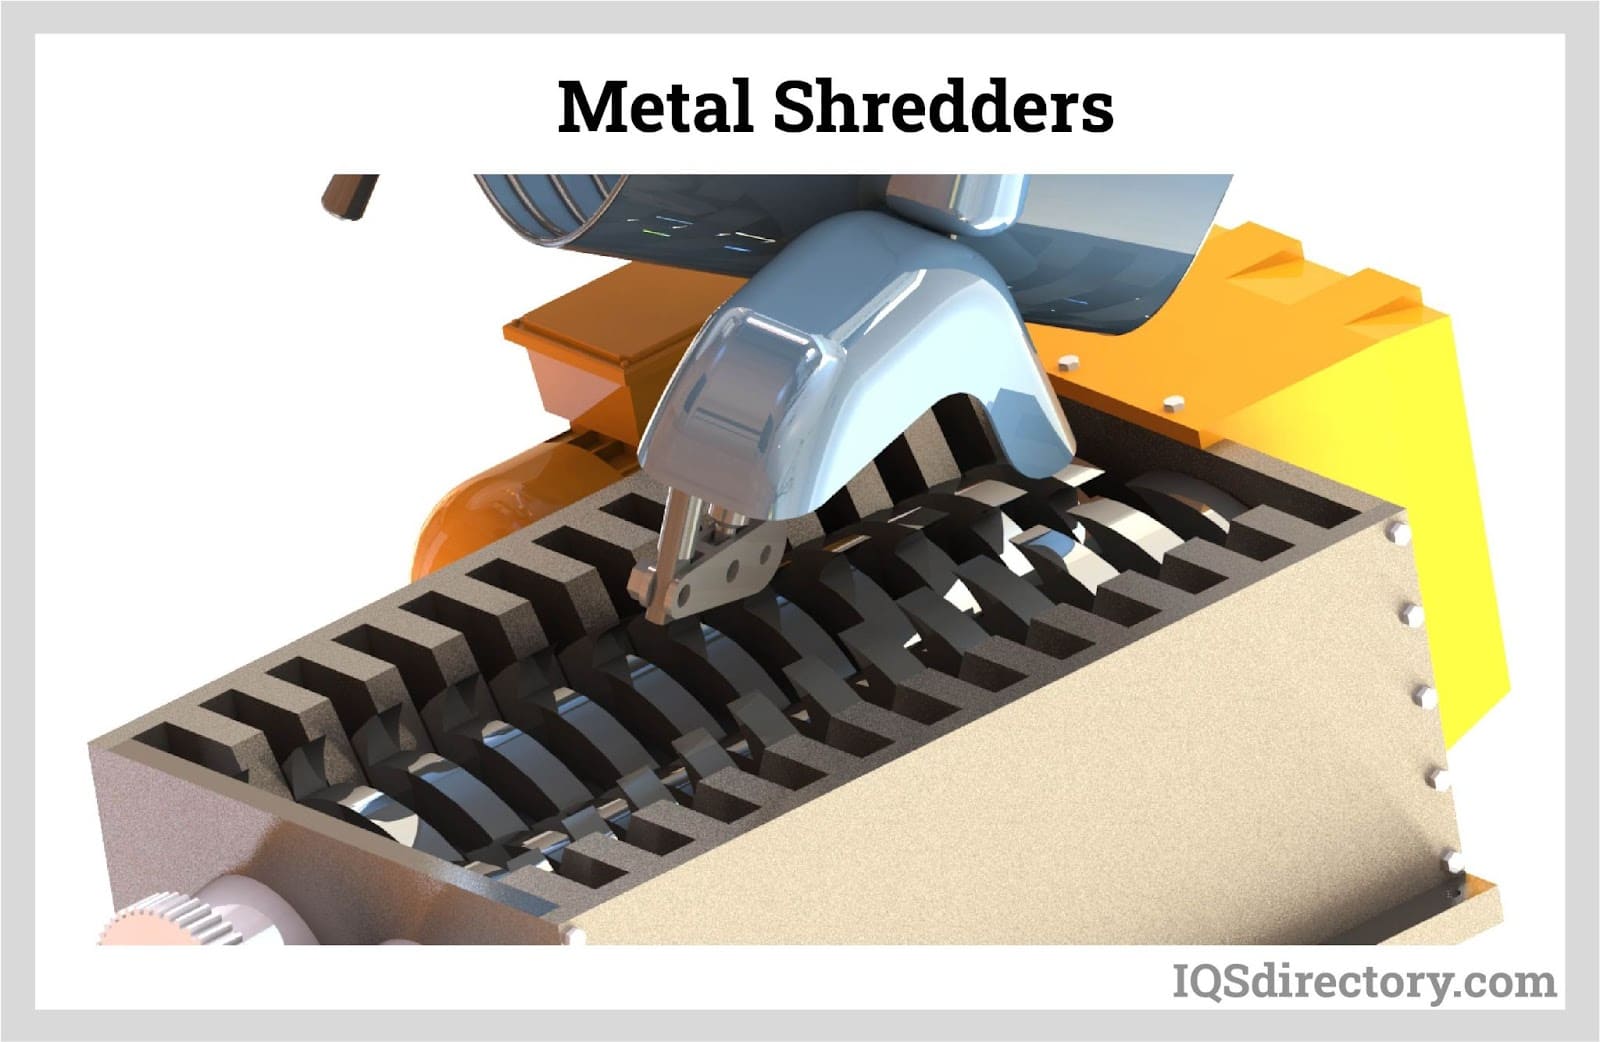 Metal Shredders